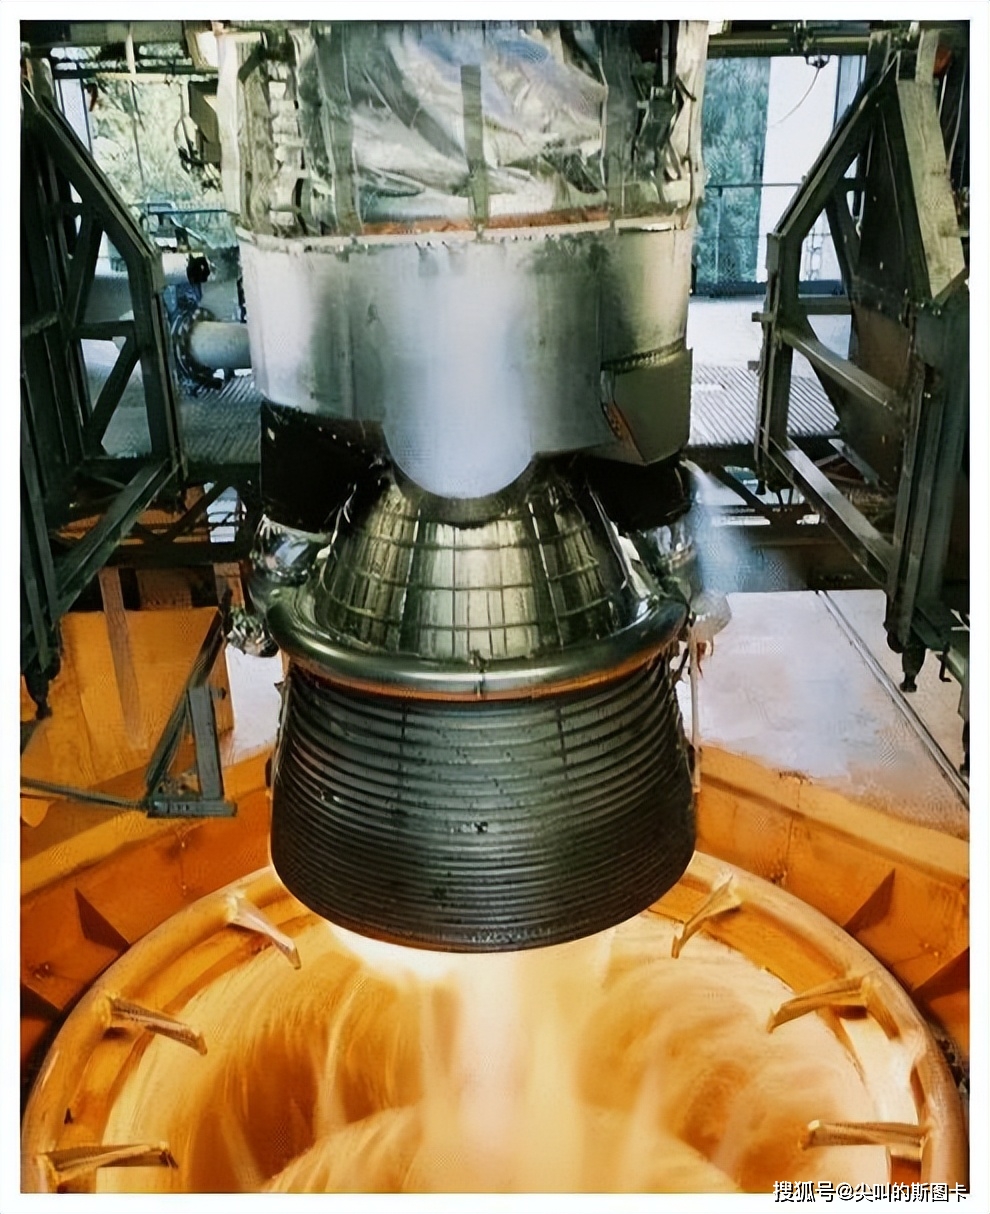 猎鹰9火箭的回收和复用,也正是建立在梅林系列,猛禽系列等发动机